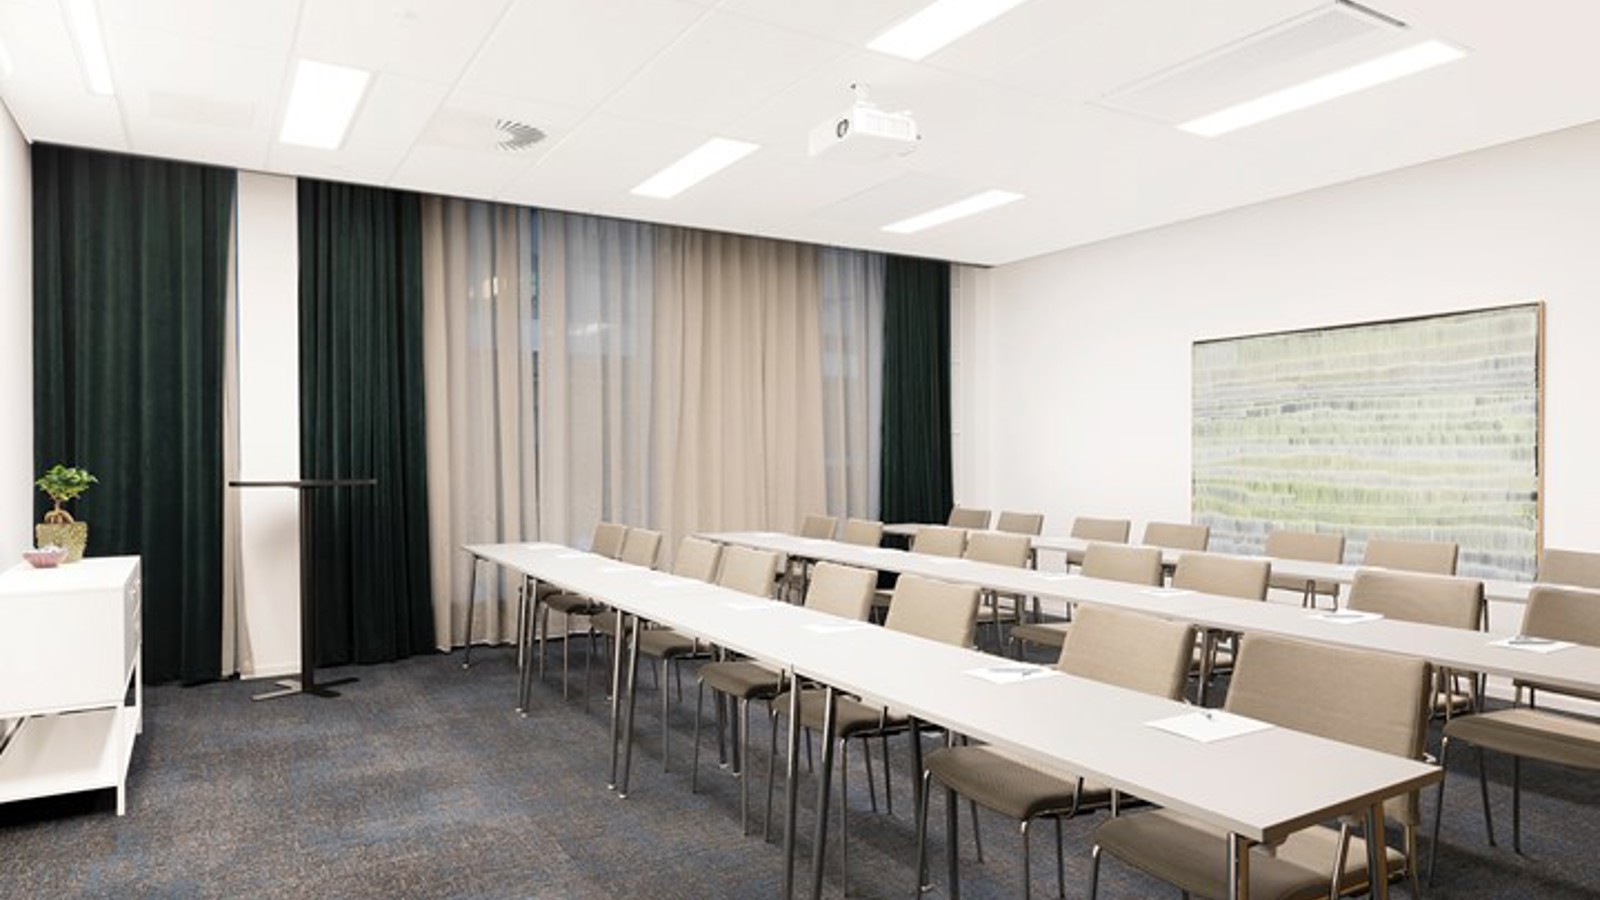 Konferensrum med skolsittning, vita möbler, grå matta och fördragna gardiner